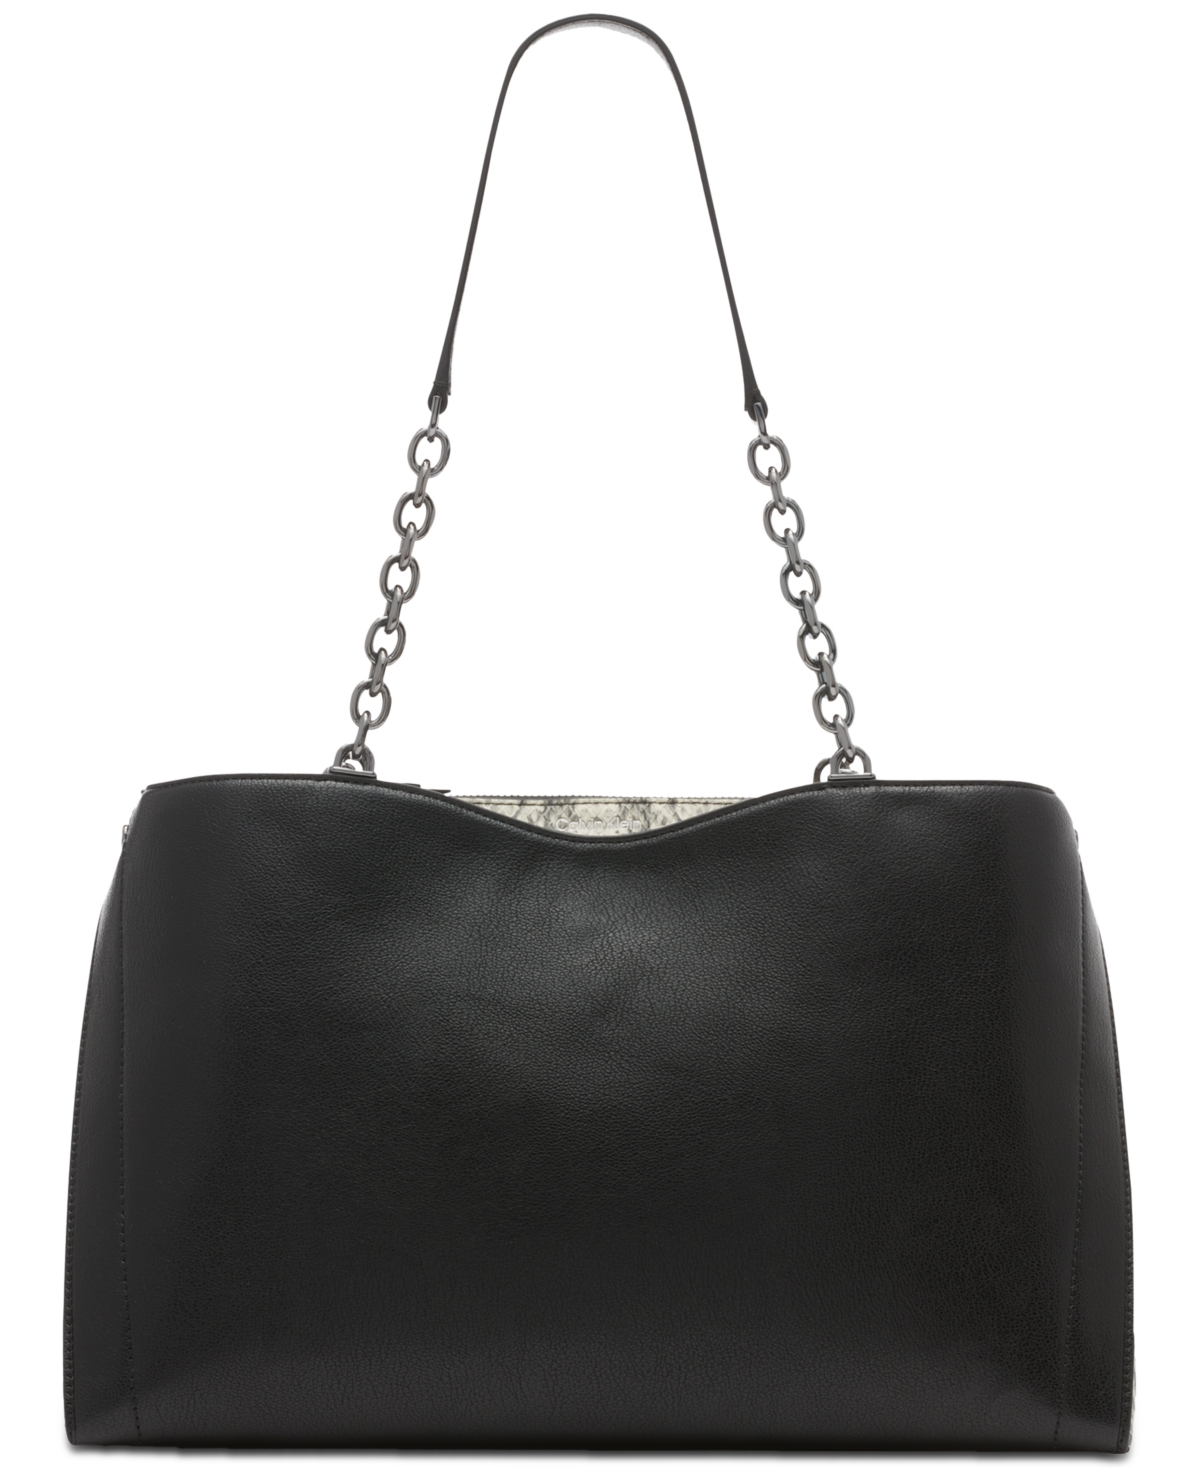 Nova Colorblocked Triple Compartment Tote Bag with Chain Strap - Black/White